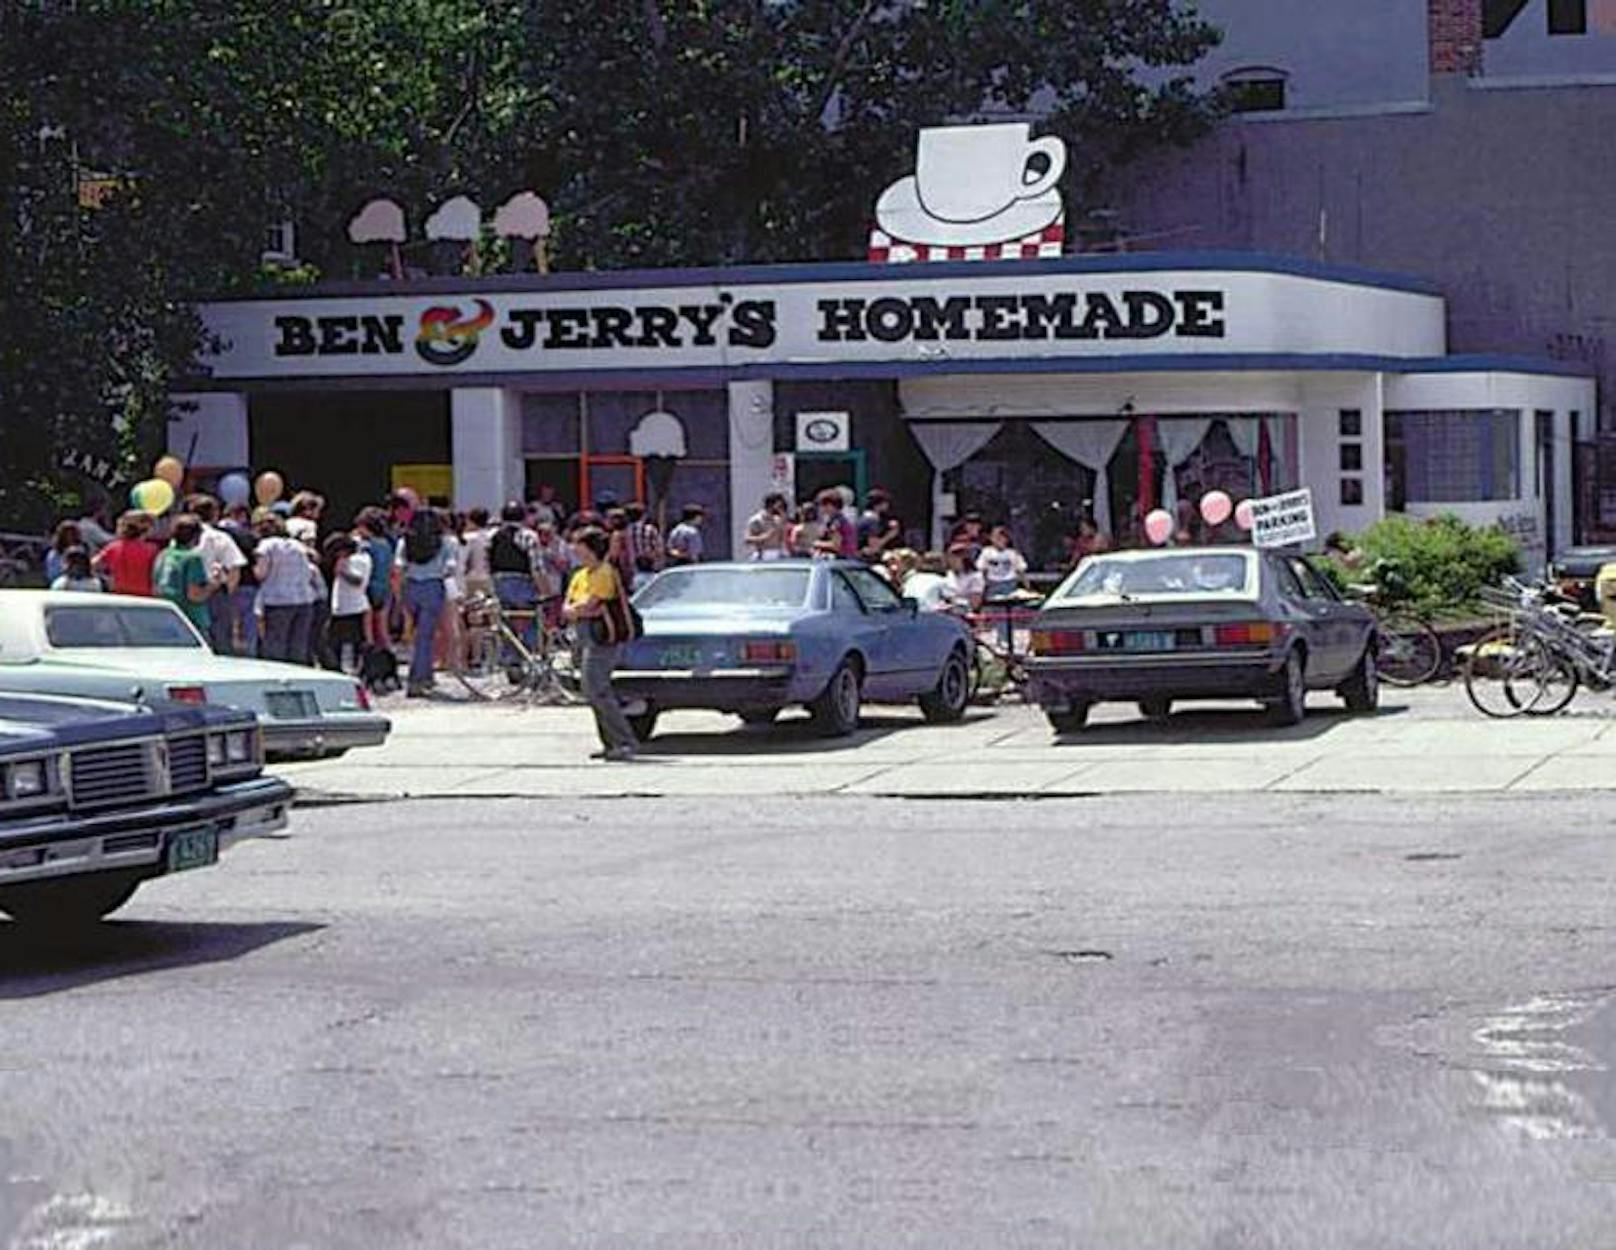 An dieser Tankstelle in Vermont eröffneten Ben & Jerry ihre erste Eisdiele.